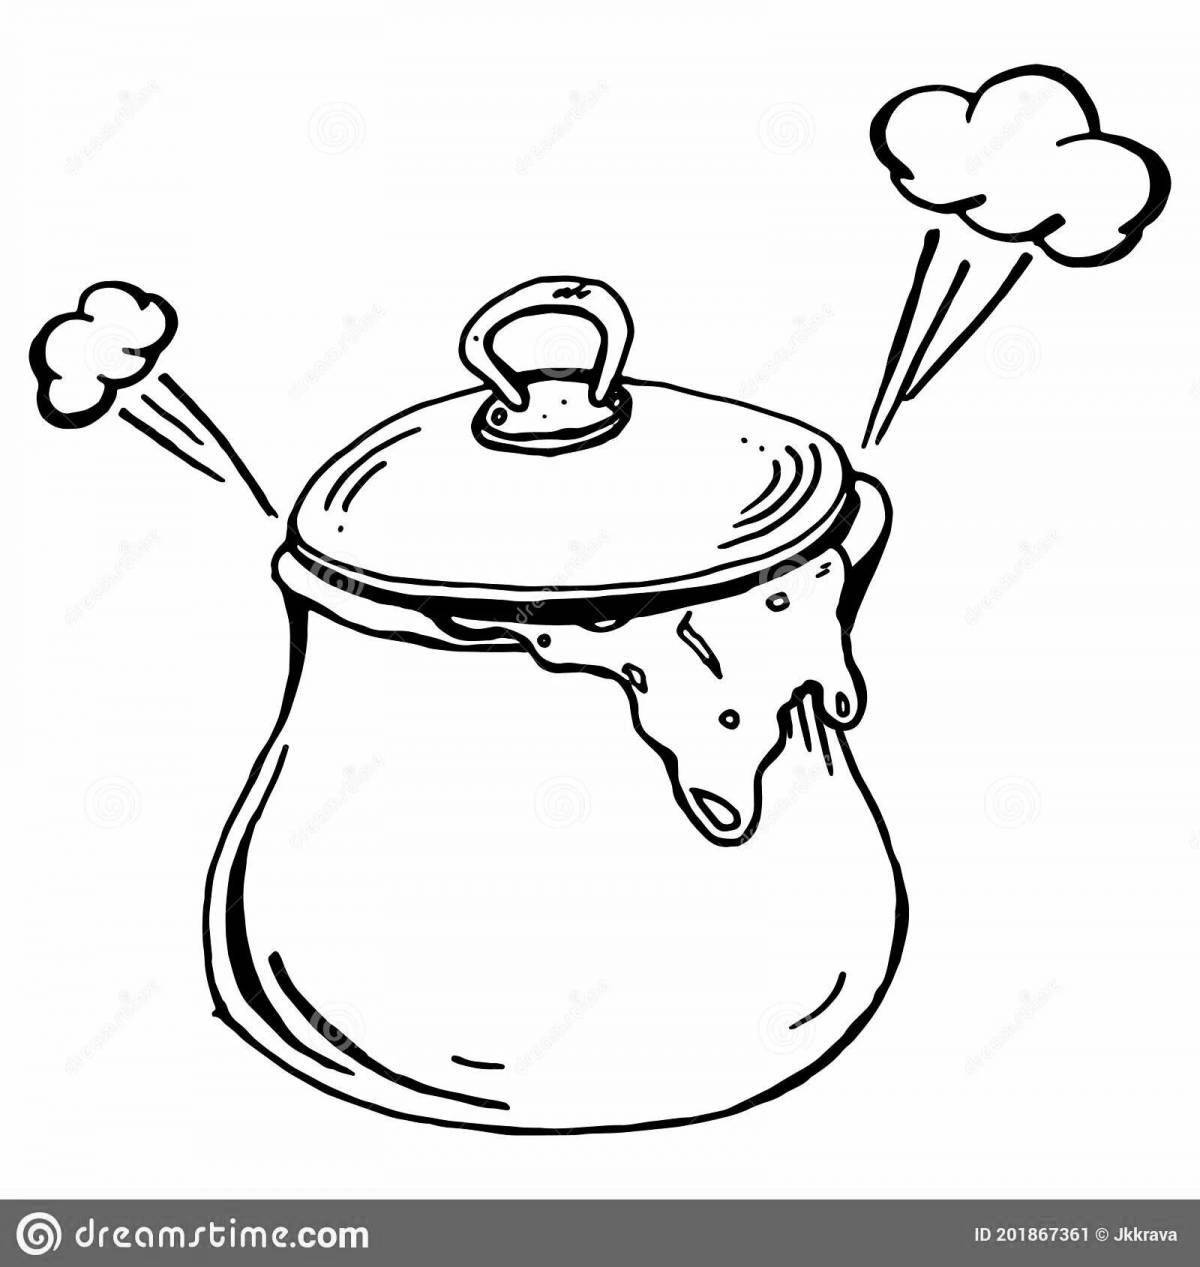 Soothing pot of porridge